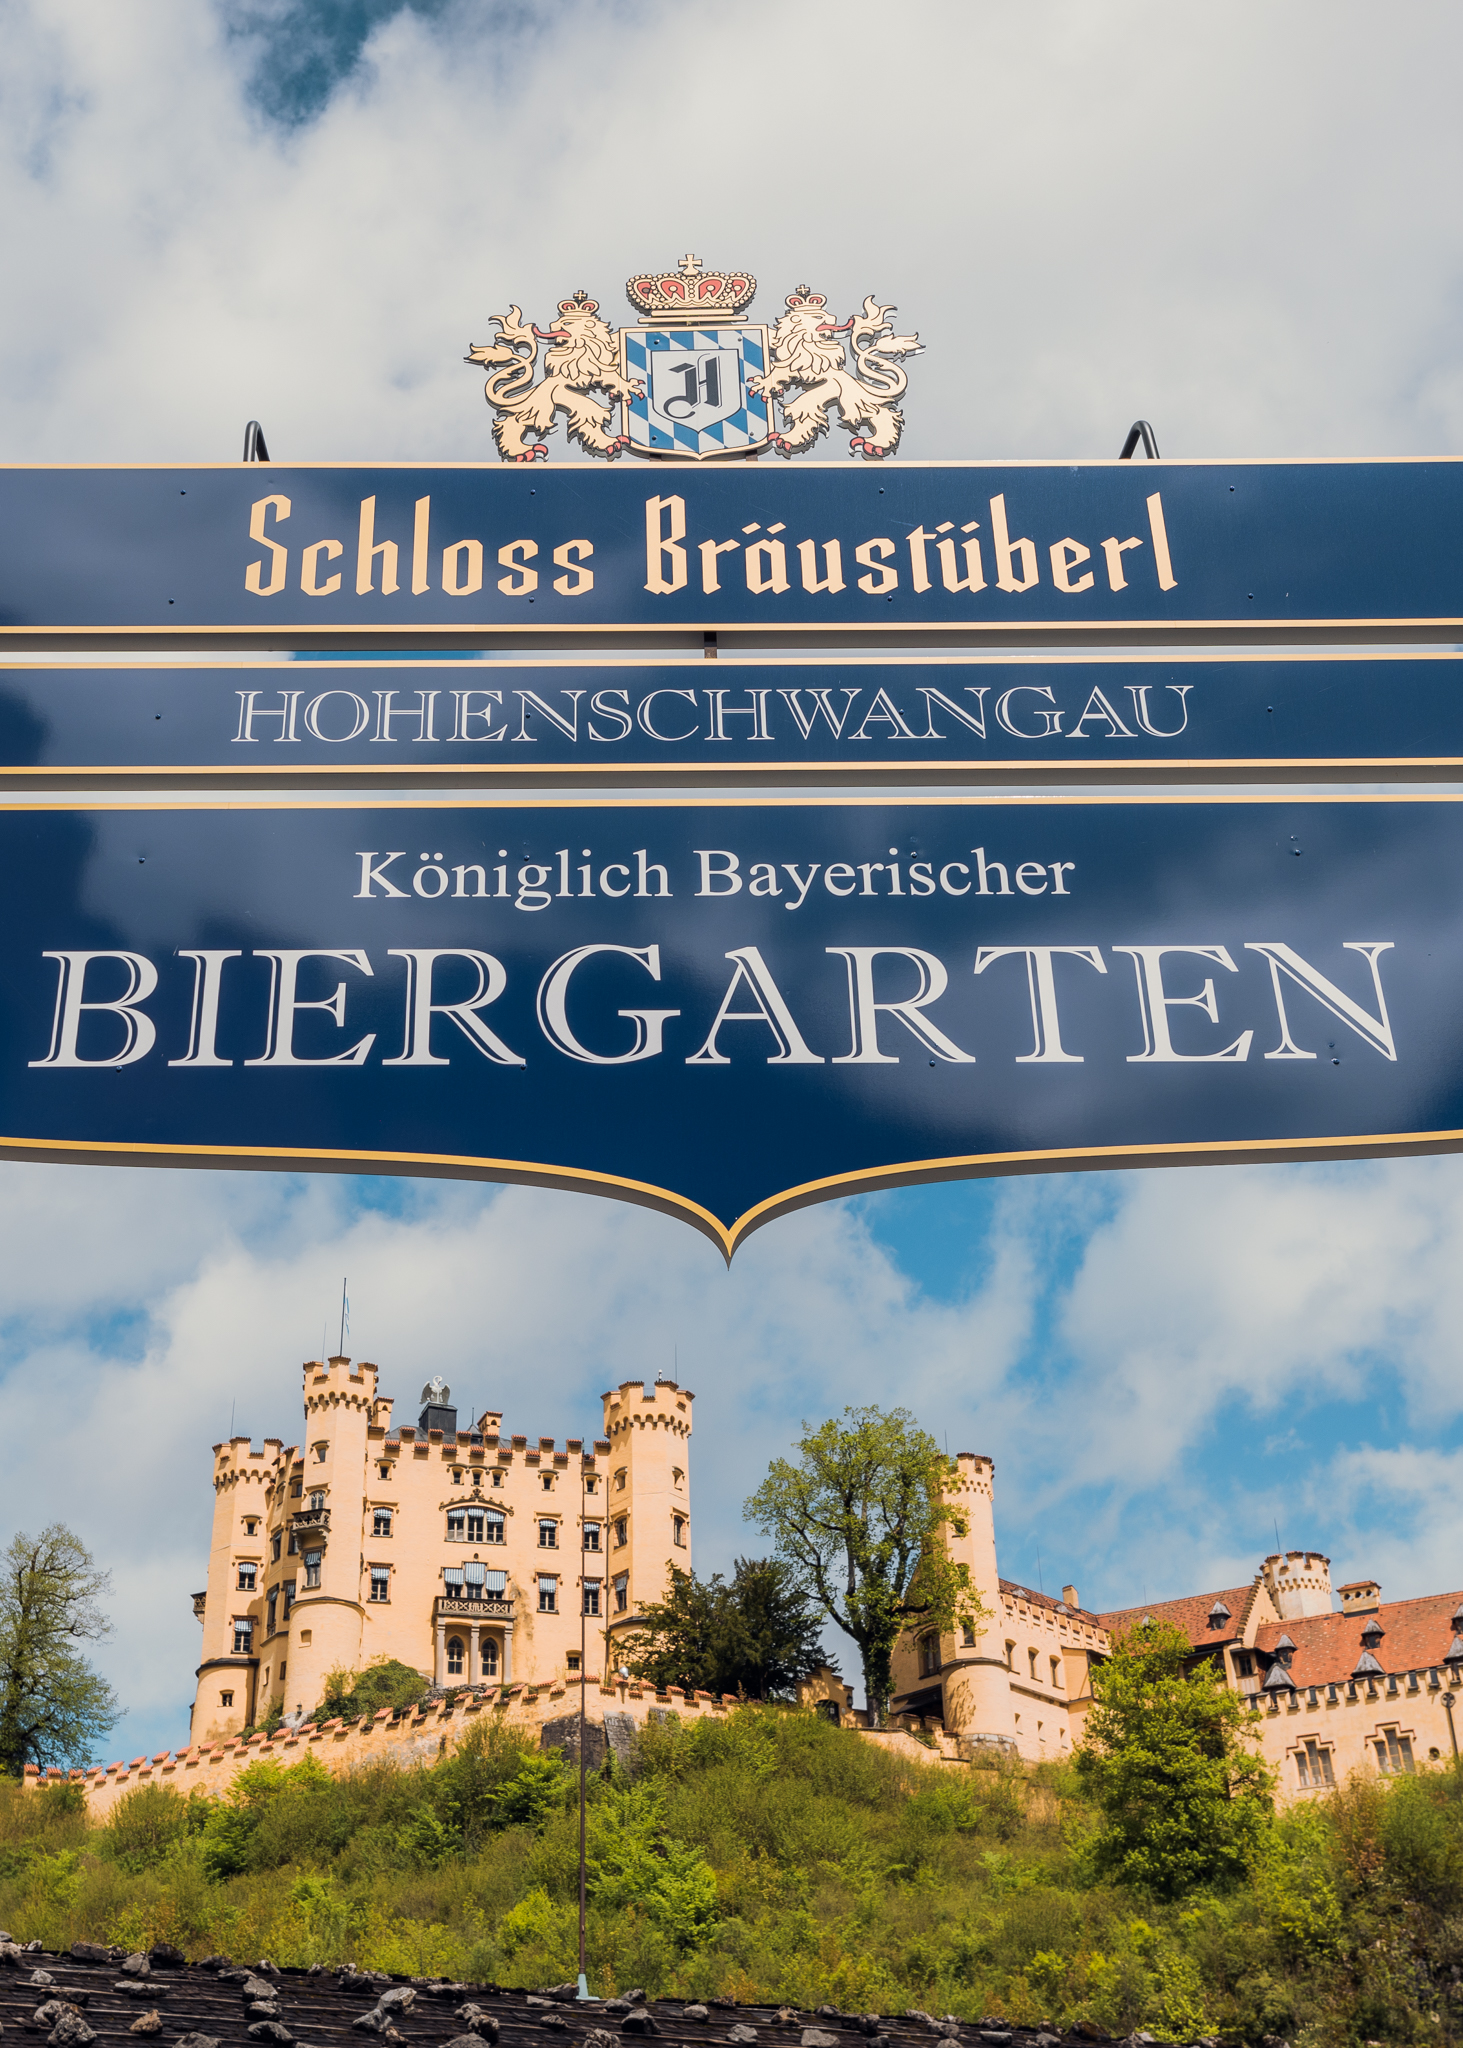 Bräustüberl Hohenschwangau Biergarten Eingang Schloss